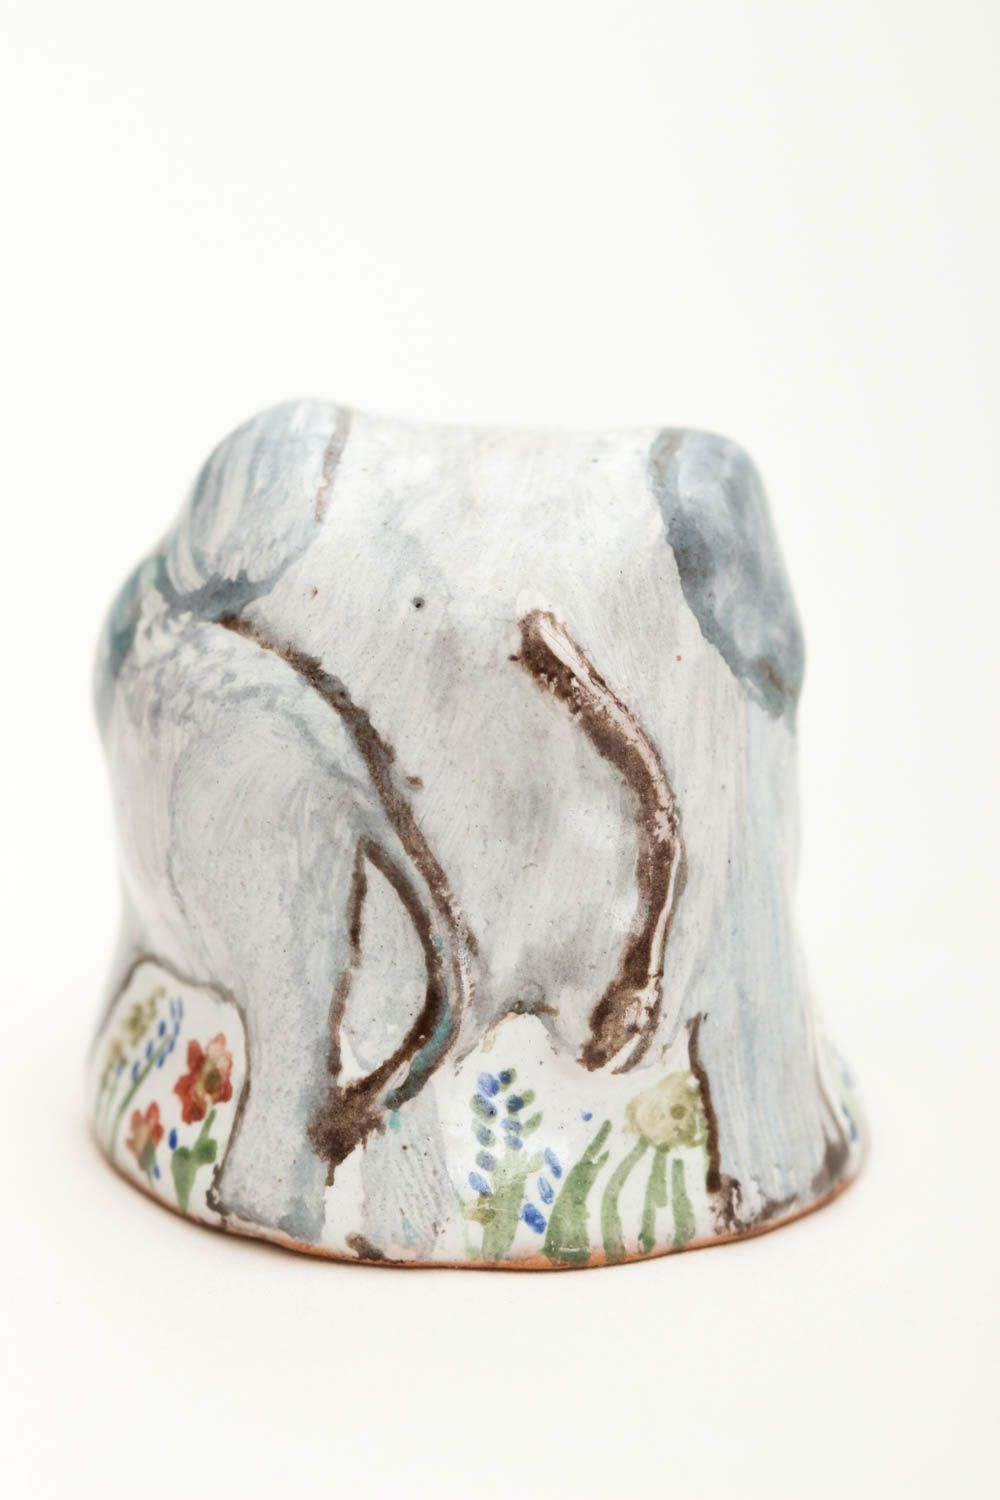 Коллекционный наперсток handmade декоративная глиняная фигурка изделие из глины фото 3